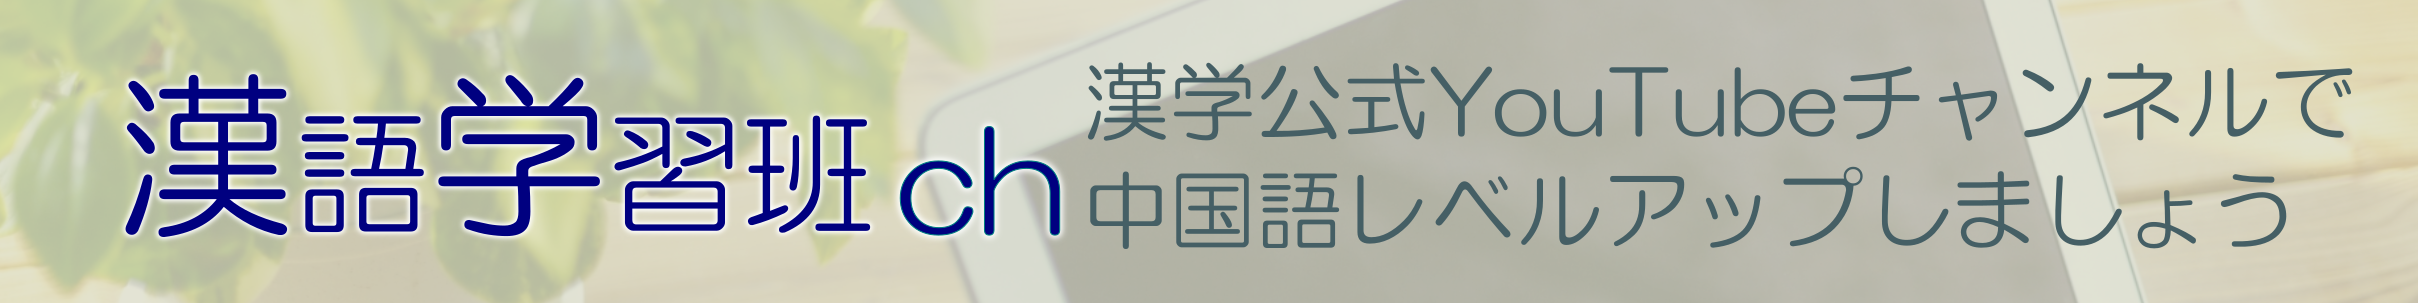 漢語学習班公式ユーチューブチャンネル